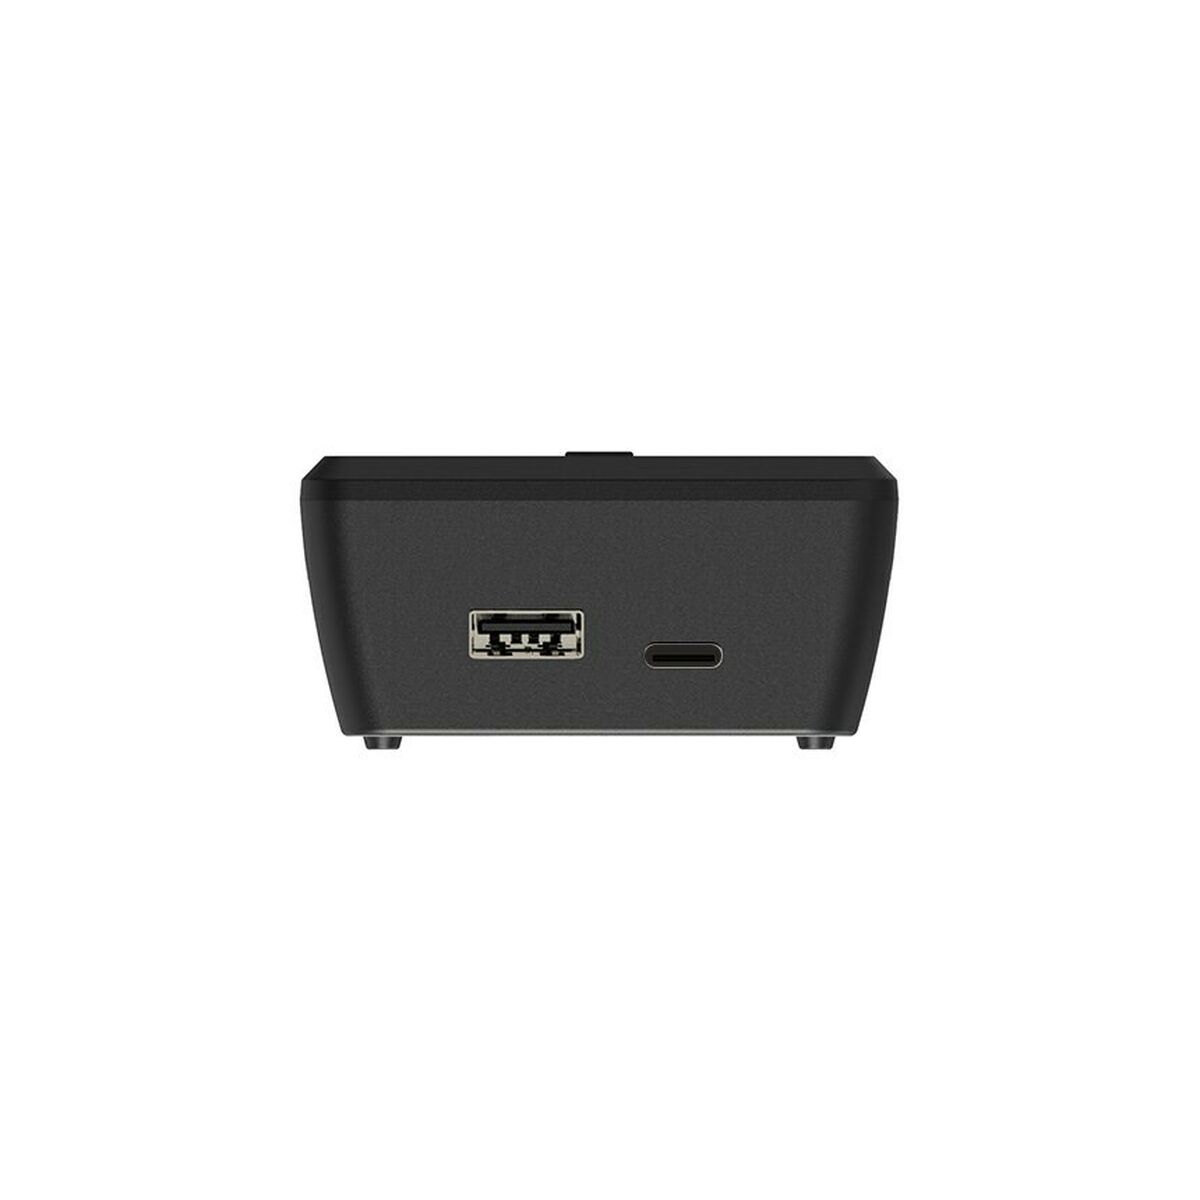 Φορτιστής μπαταρίας Xtar VC2SL Μπαταρίες x 2